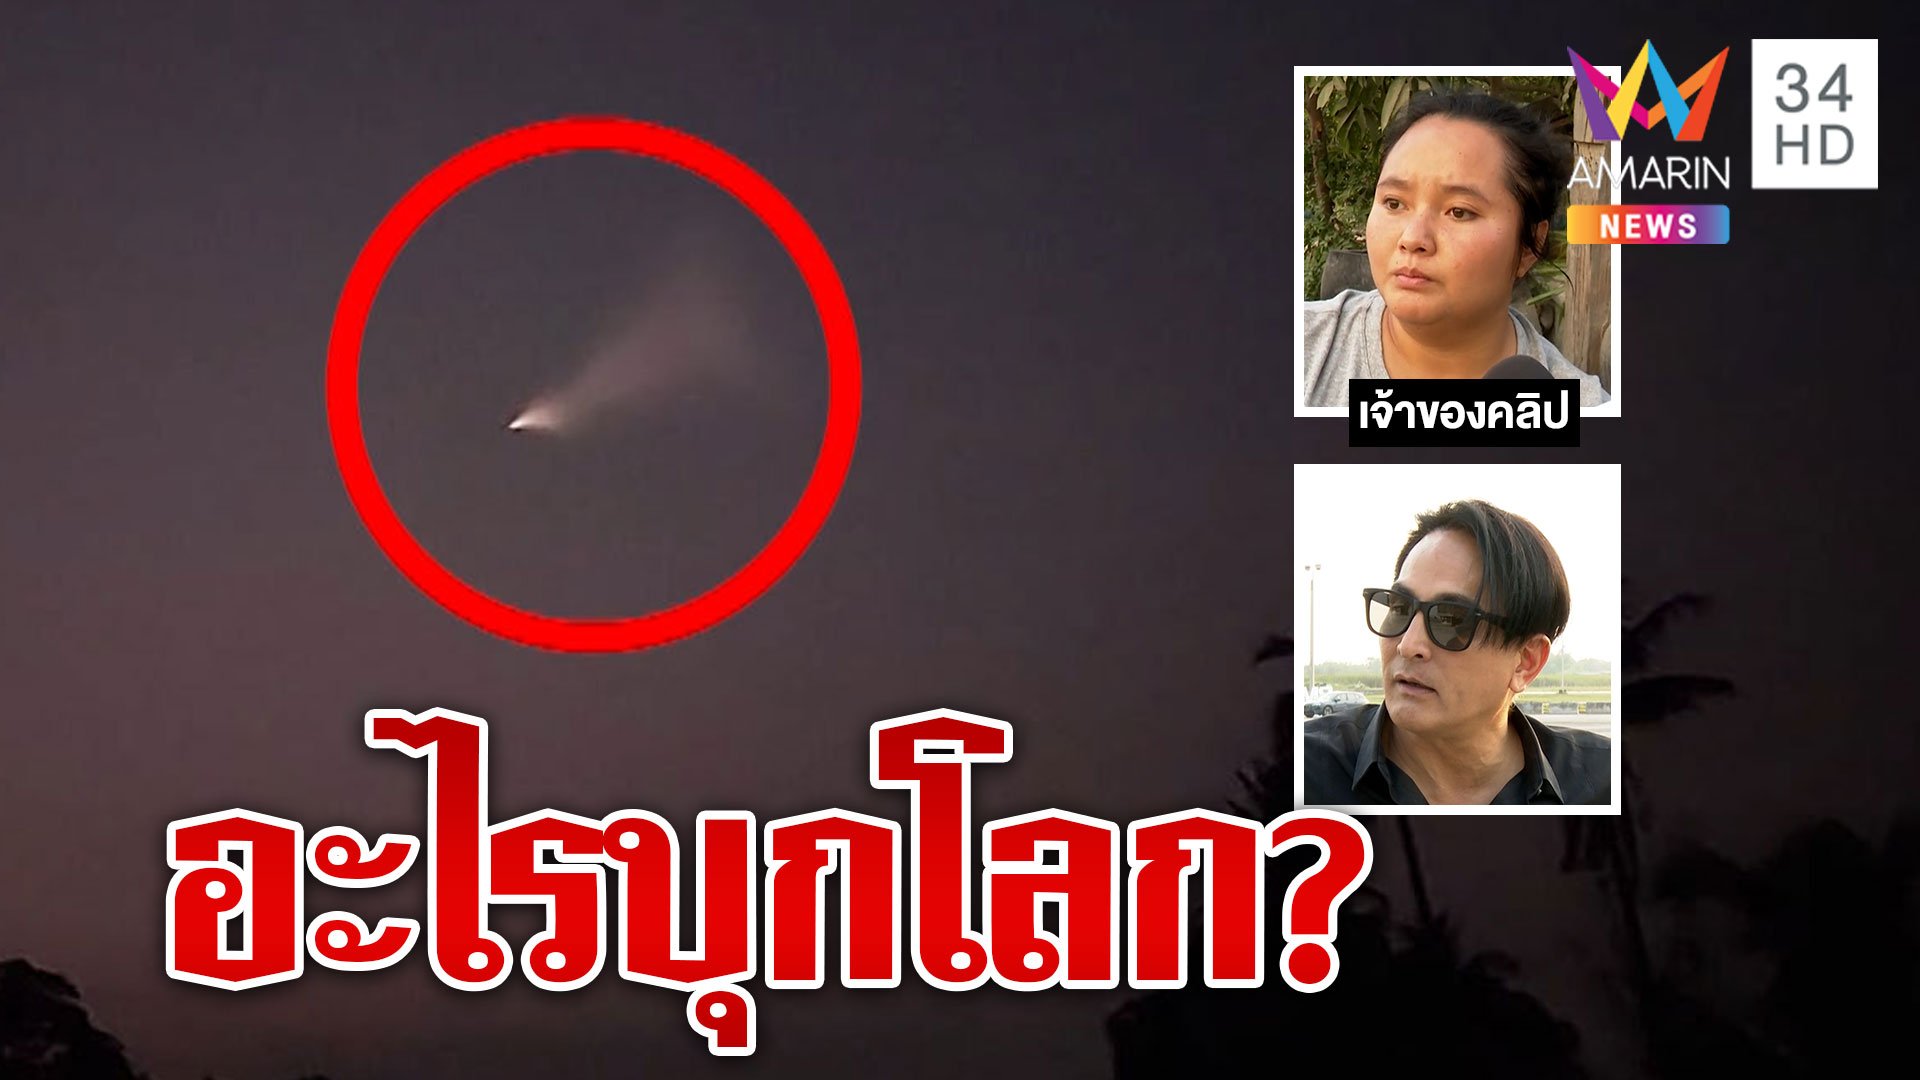 ชาวบ้านเชื่อเเสงประหลาดโผล่เหนือฟ้าคือ UFO "พีท ทองเจือ" ชี้คือ "UAP"  | ทุบโต๊ะข่าว | 16 มี.ค. 66 | AMARIN TVHD34